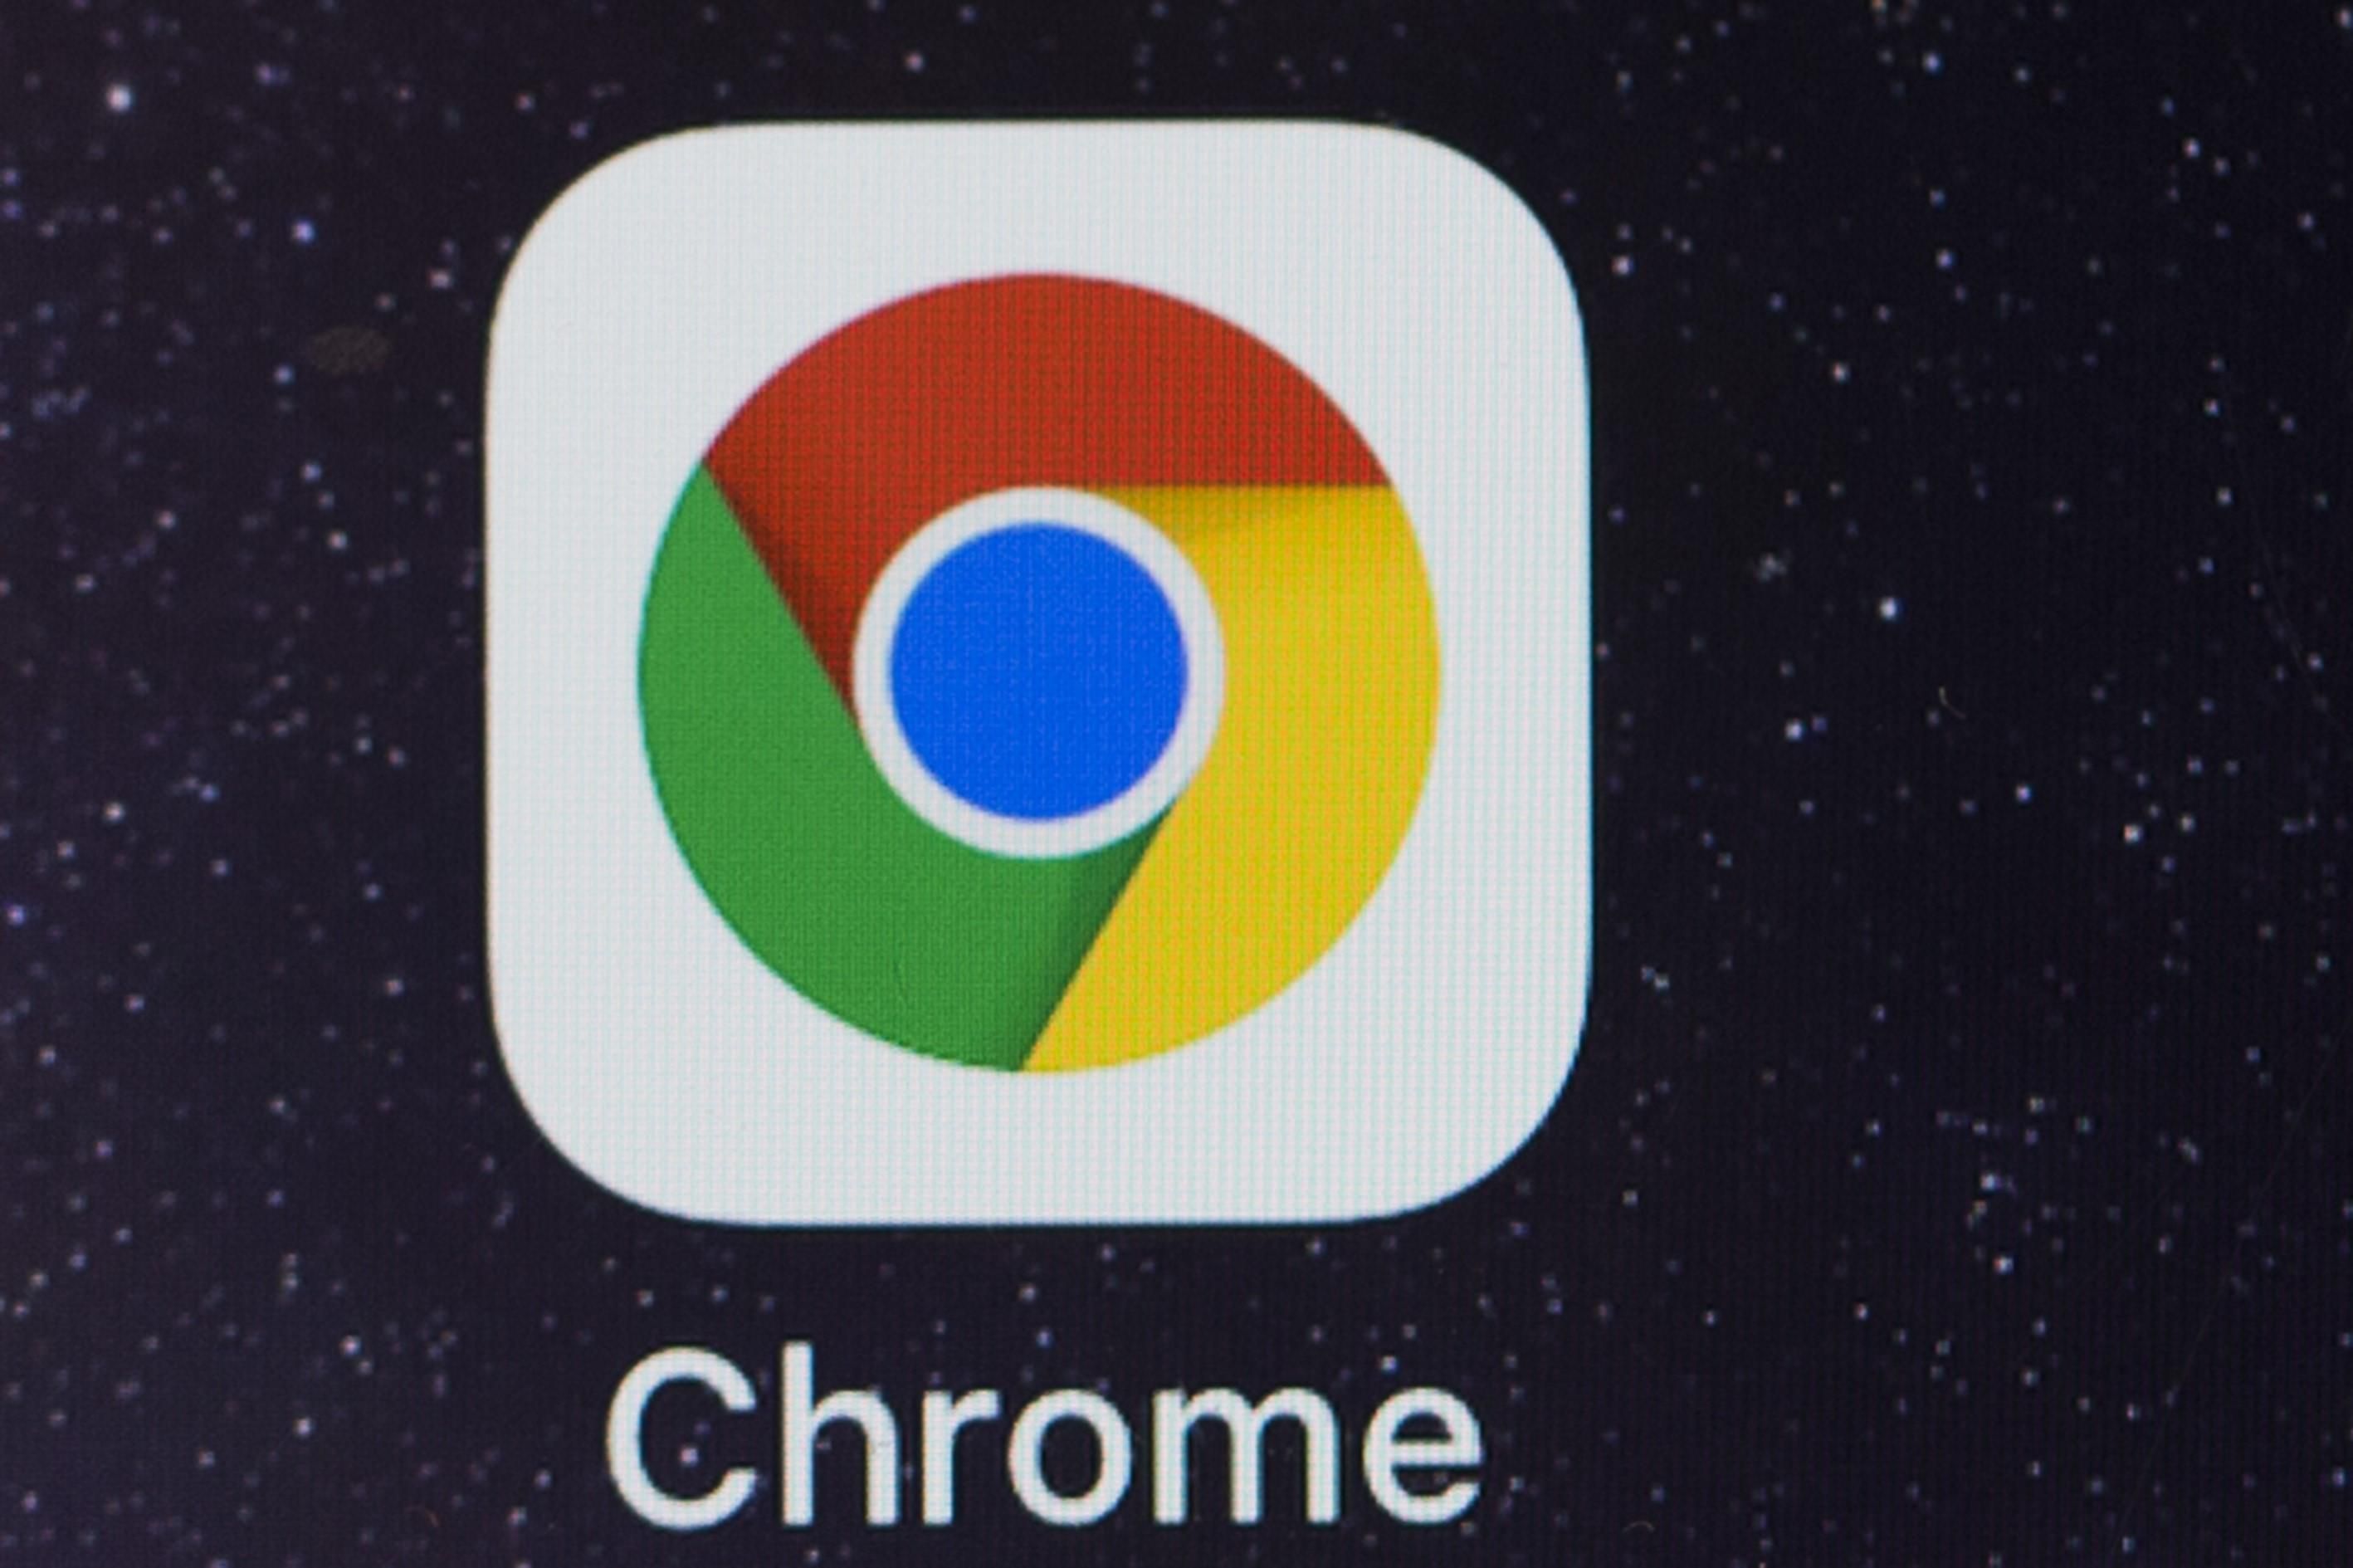 Chrome будет предупреждать пользователей о снижении цены на товары